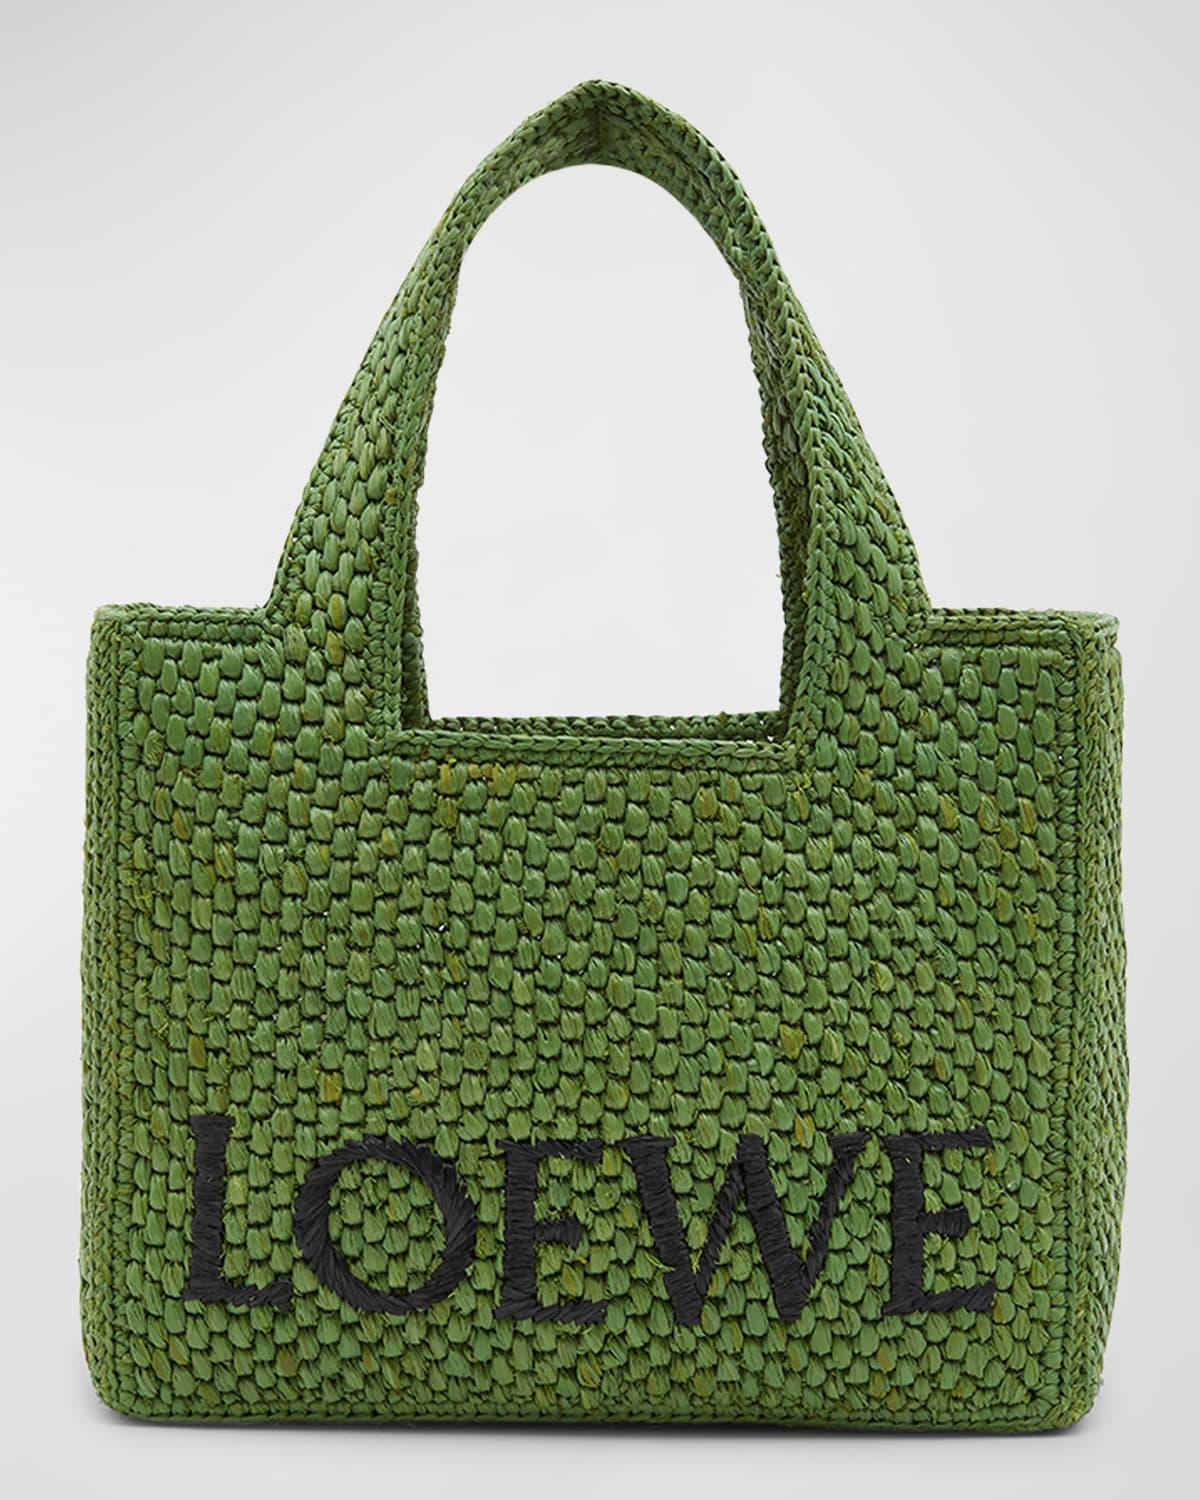 Loewe Raffia Tote Bag